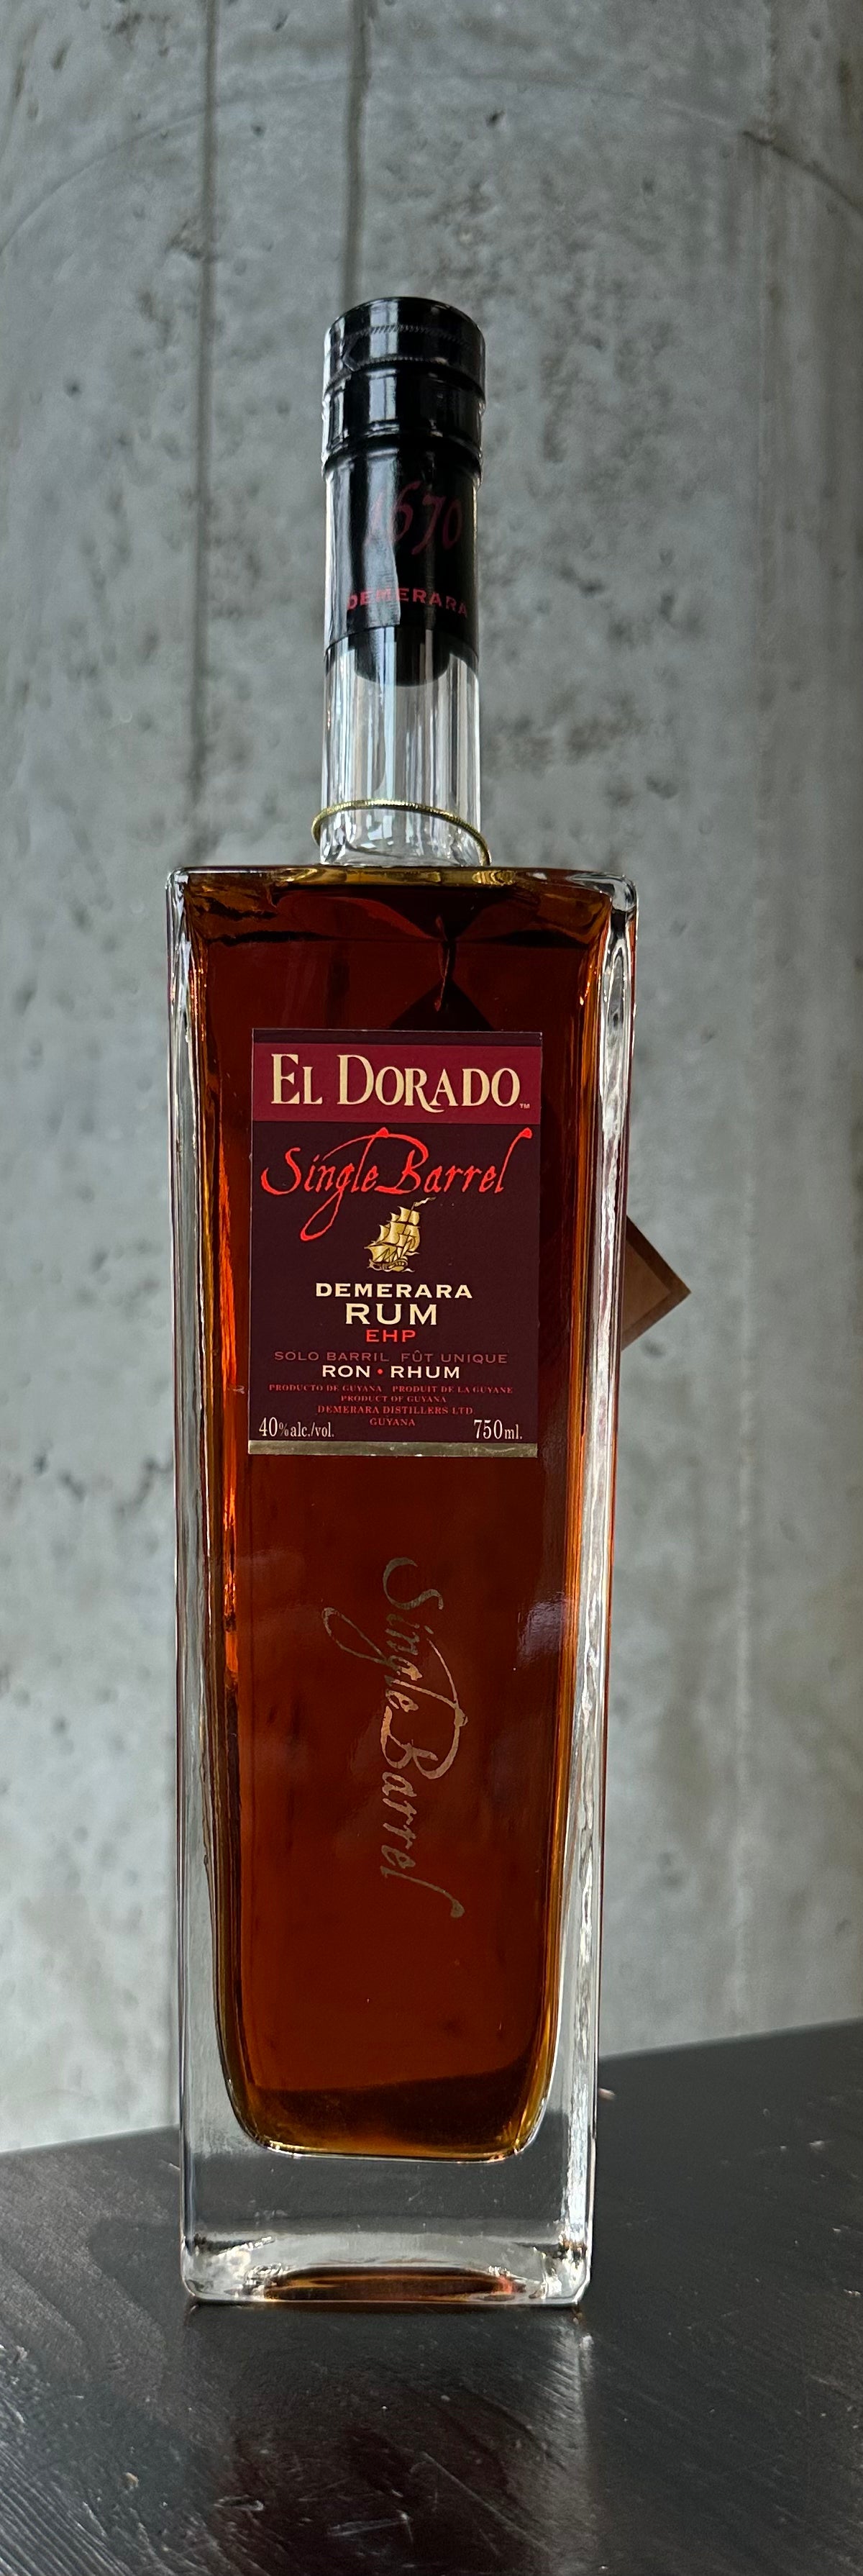 El Dorado Rum Single Barrel "EHP"